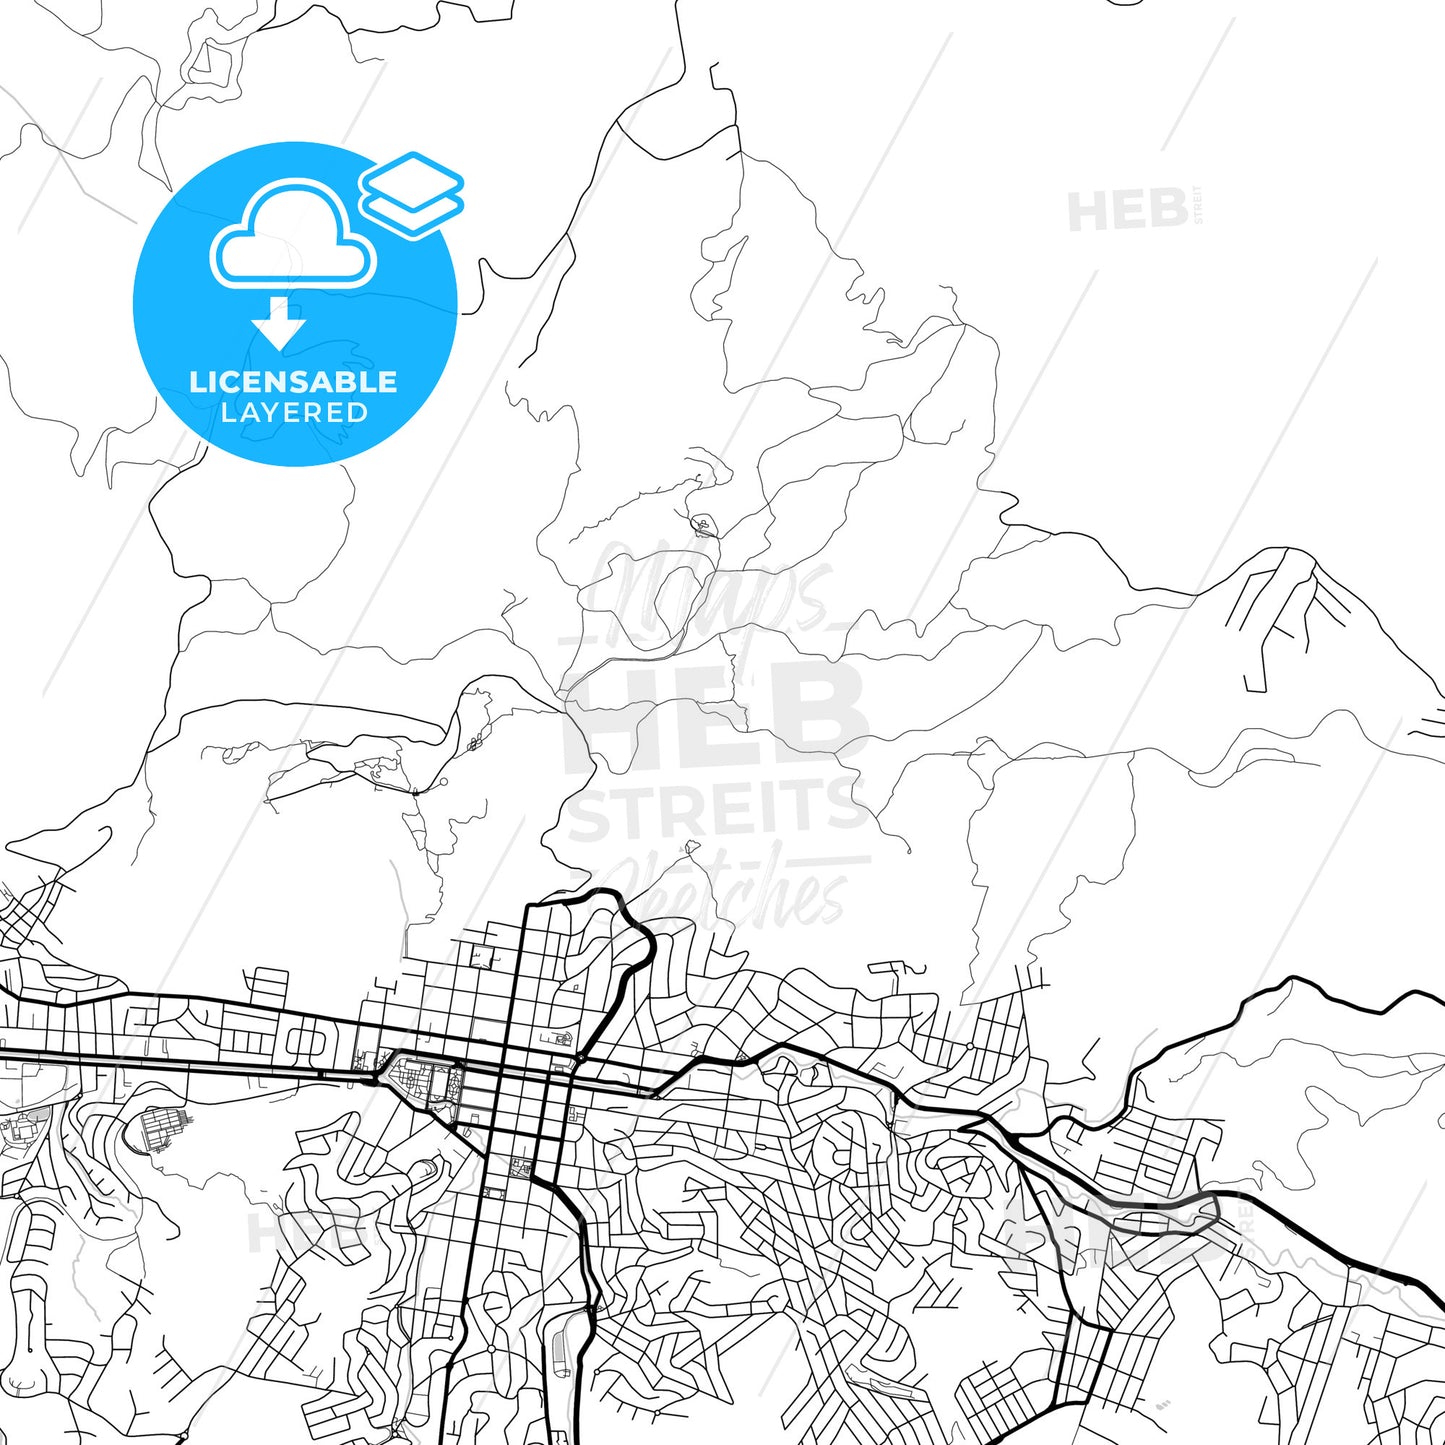 Layered PDF map of Pocos de Caldas, Brazil